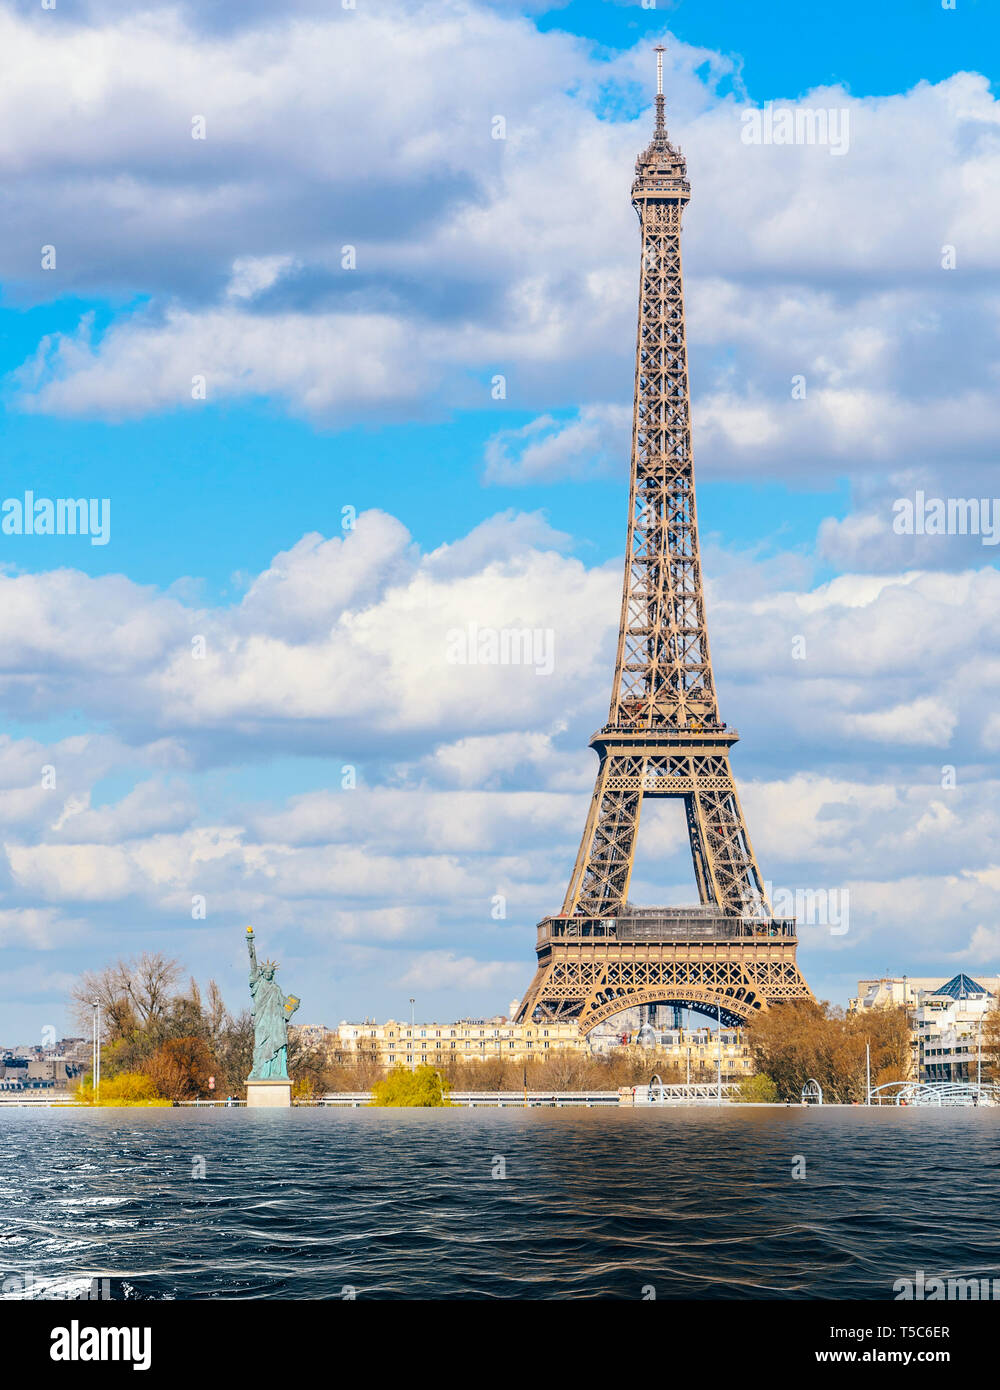 Die globale Erwärmung, schmelzende Eiskappen, Klimawandel Flut Konzept in Paris, Frankreich. Stockfoto